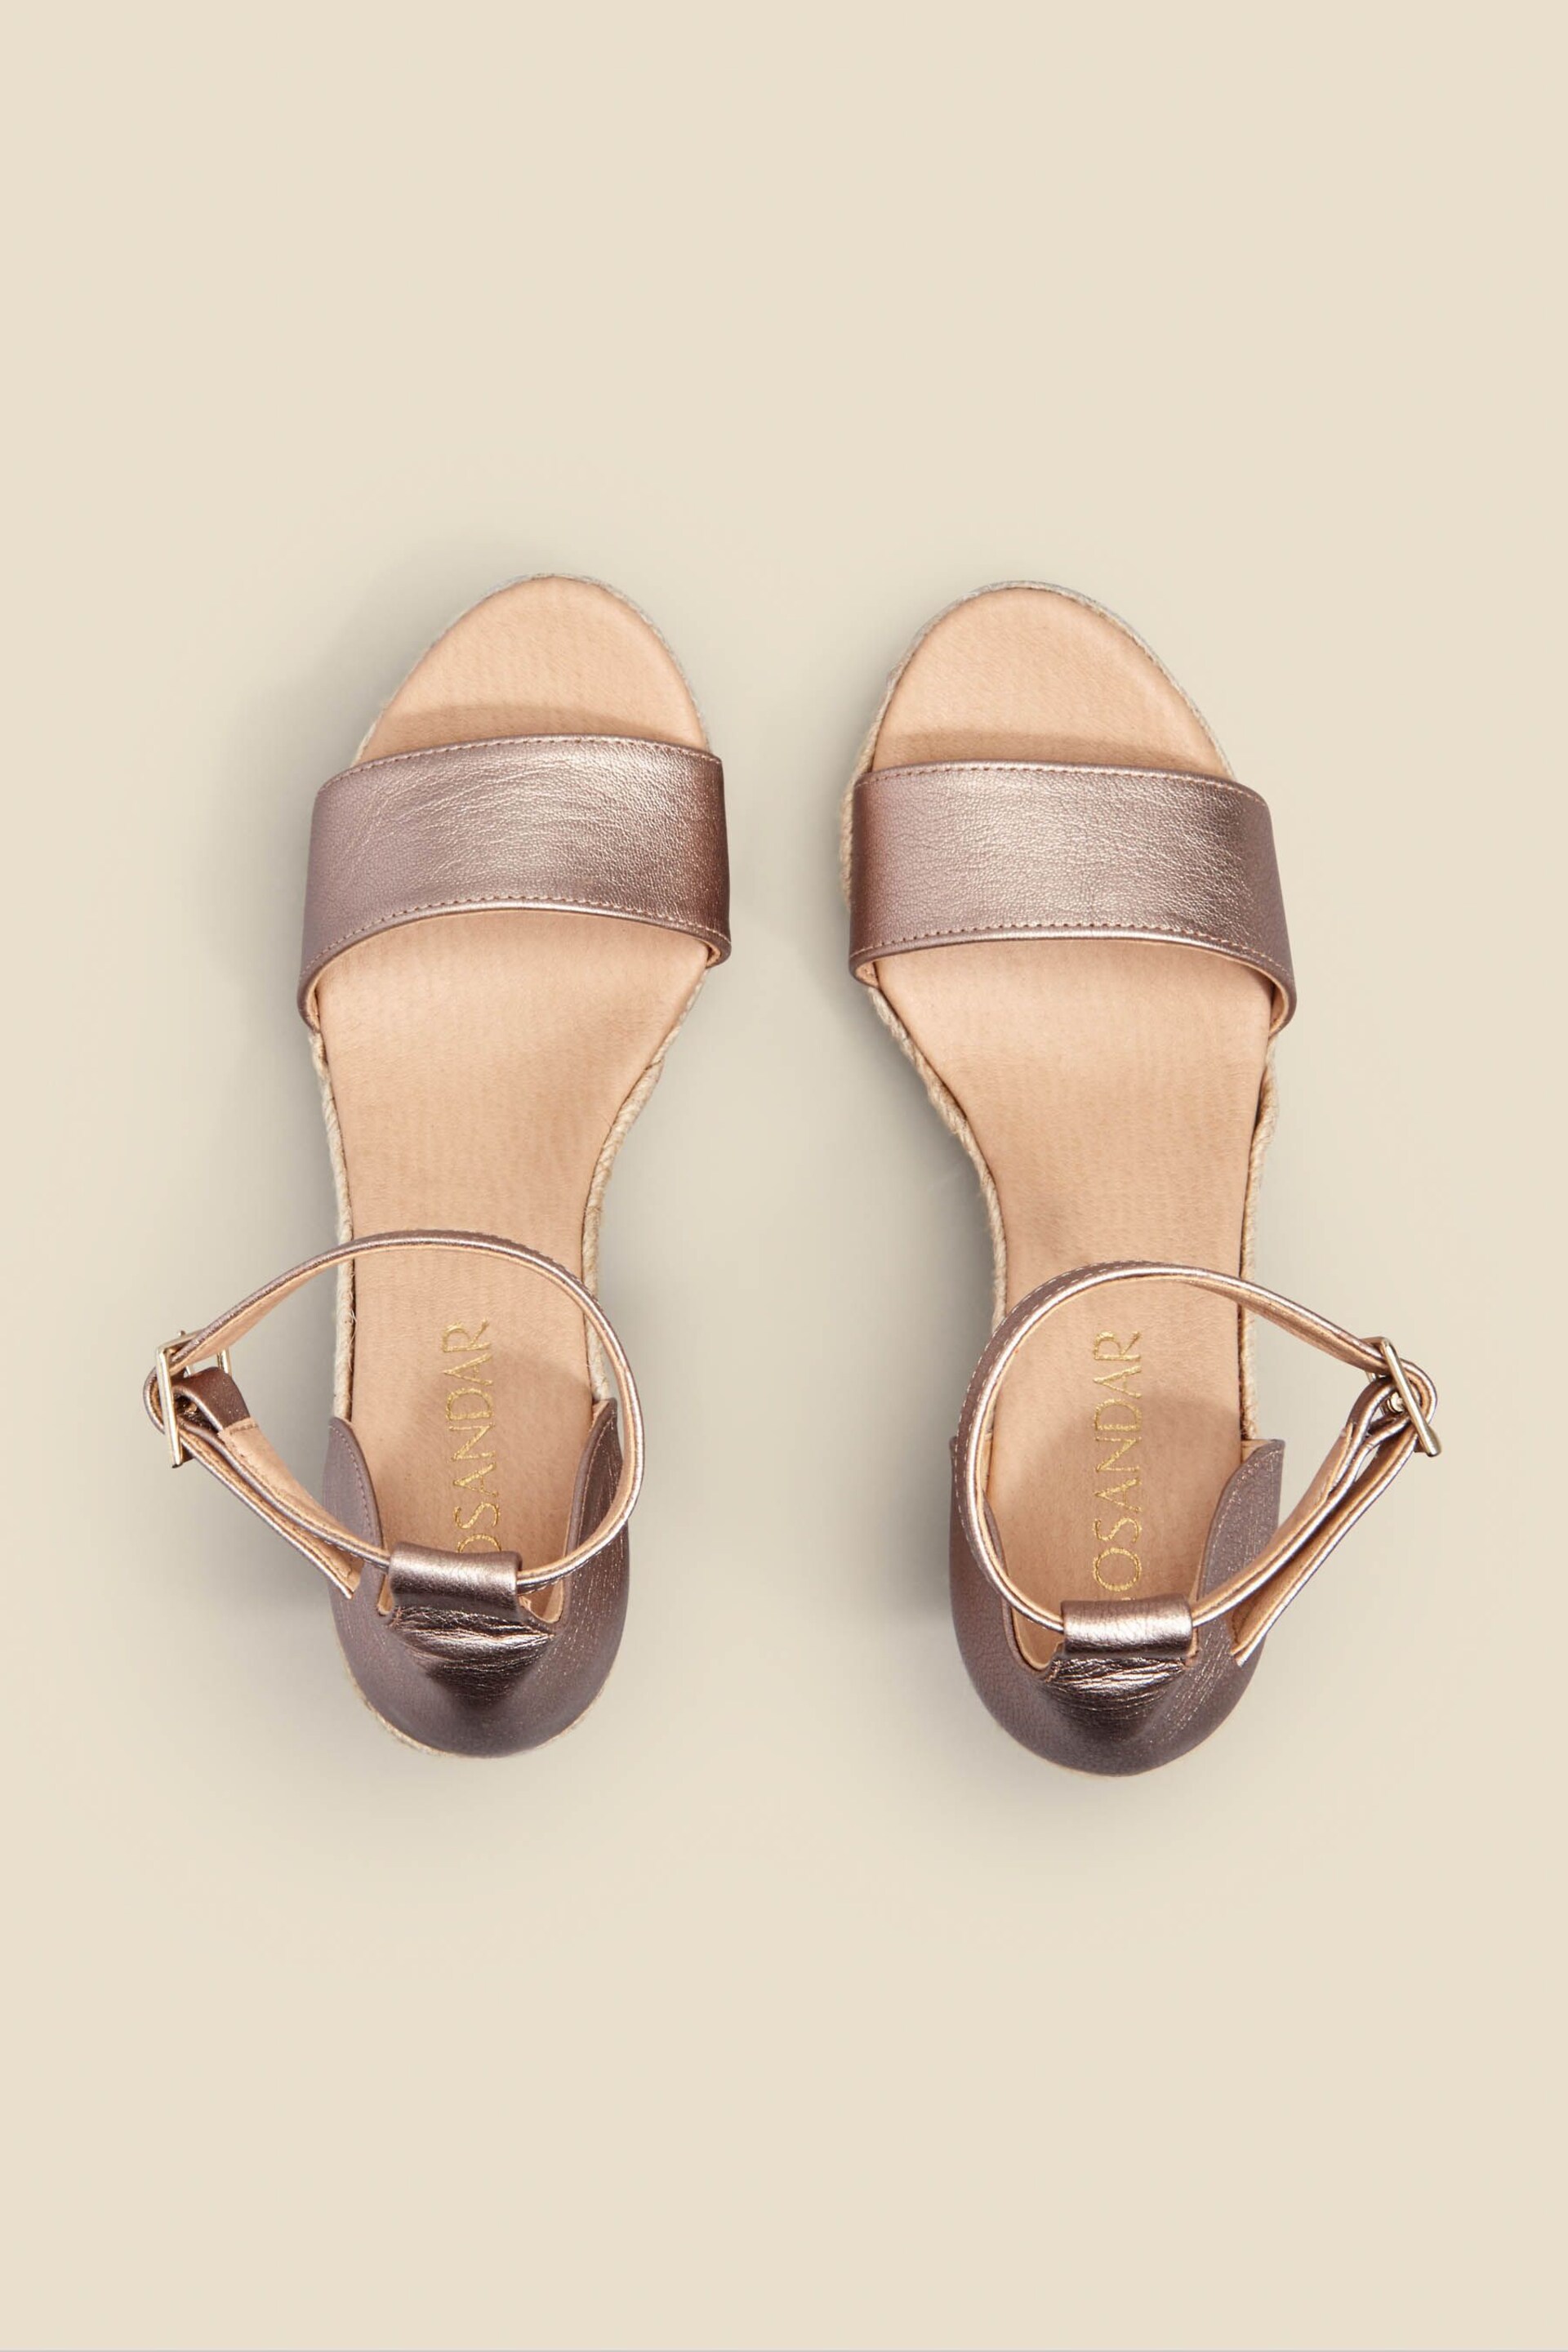 Sosandar Gold Leather High Wedge Ankle Strap Espadrille Sandal - Image 5 of 5